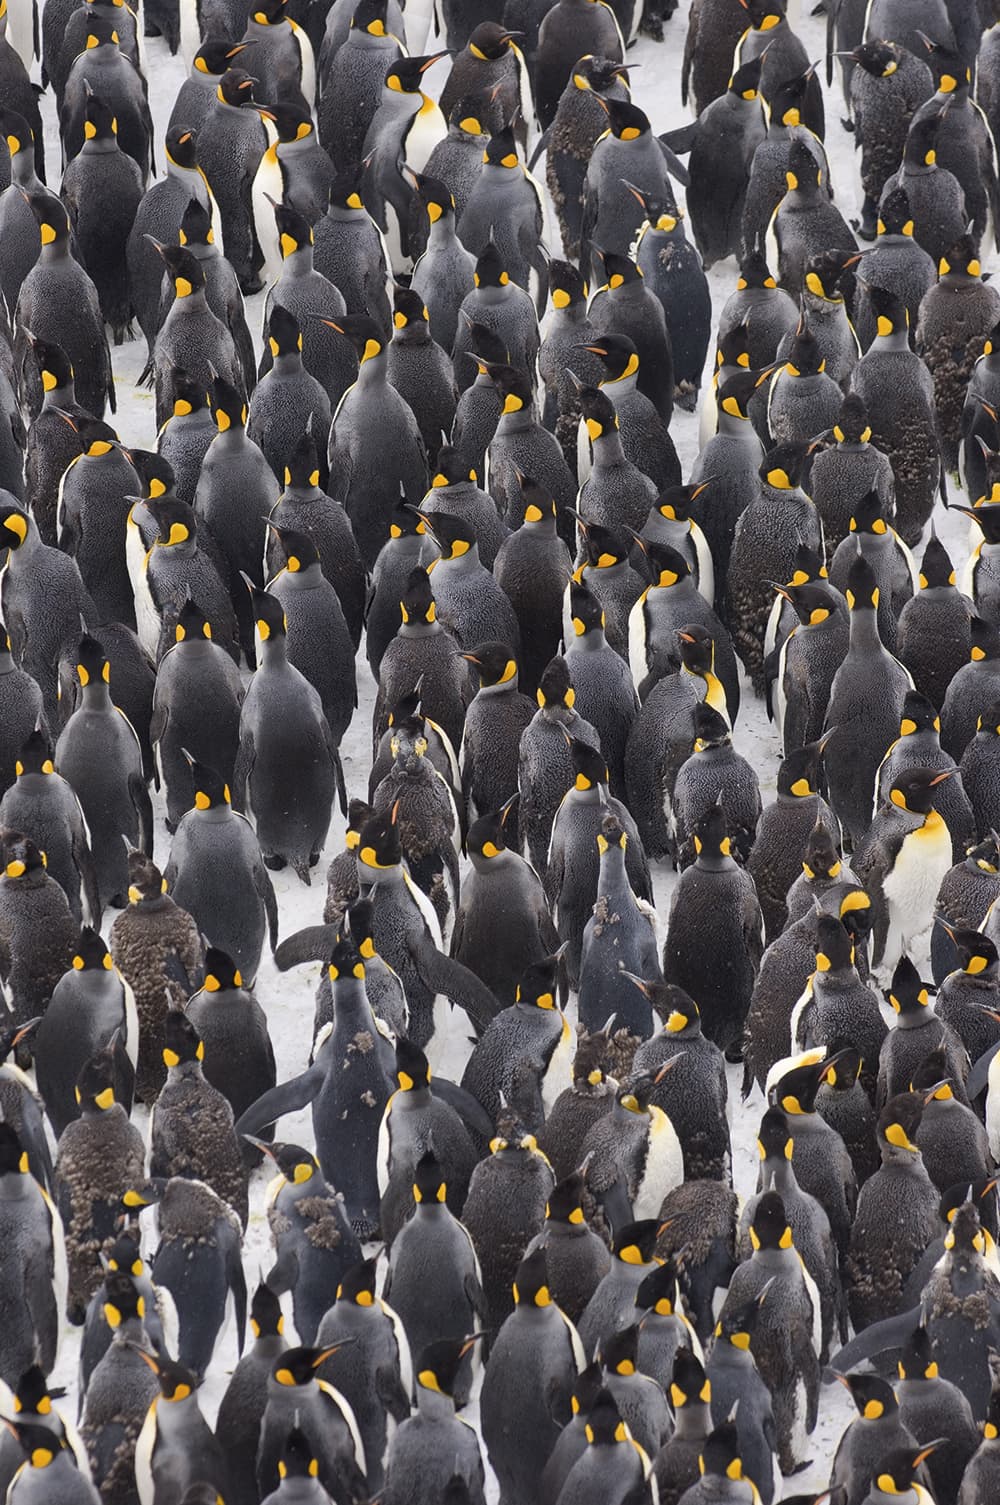 David-Tipling-king-penguins-huddled